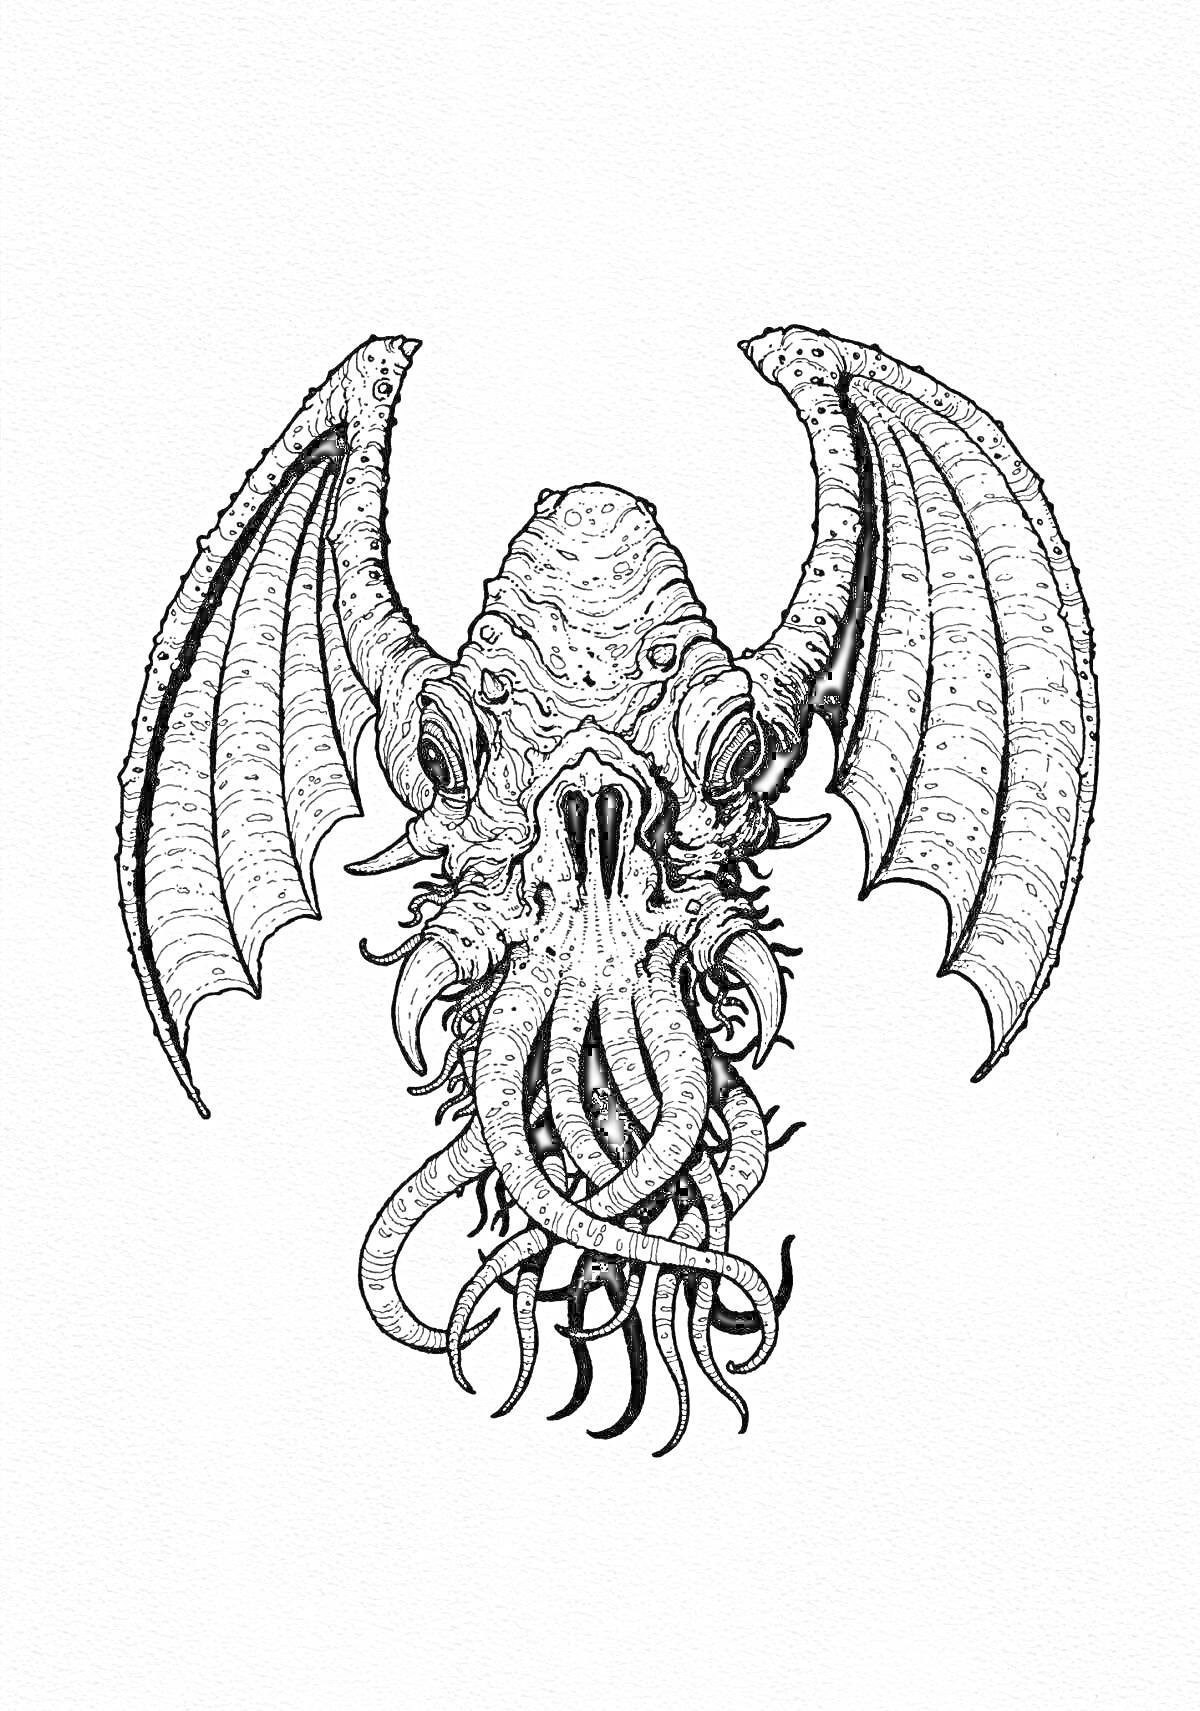 Раскраска Существо с крыльями и щупальцами в стиле Лавкрафта